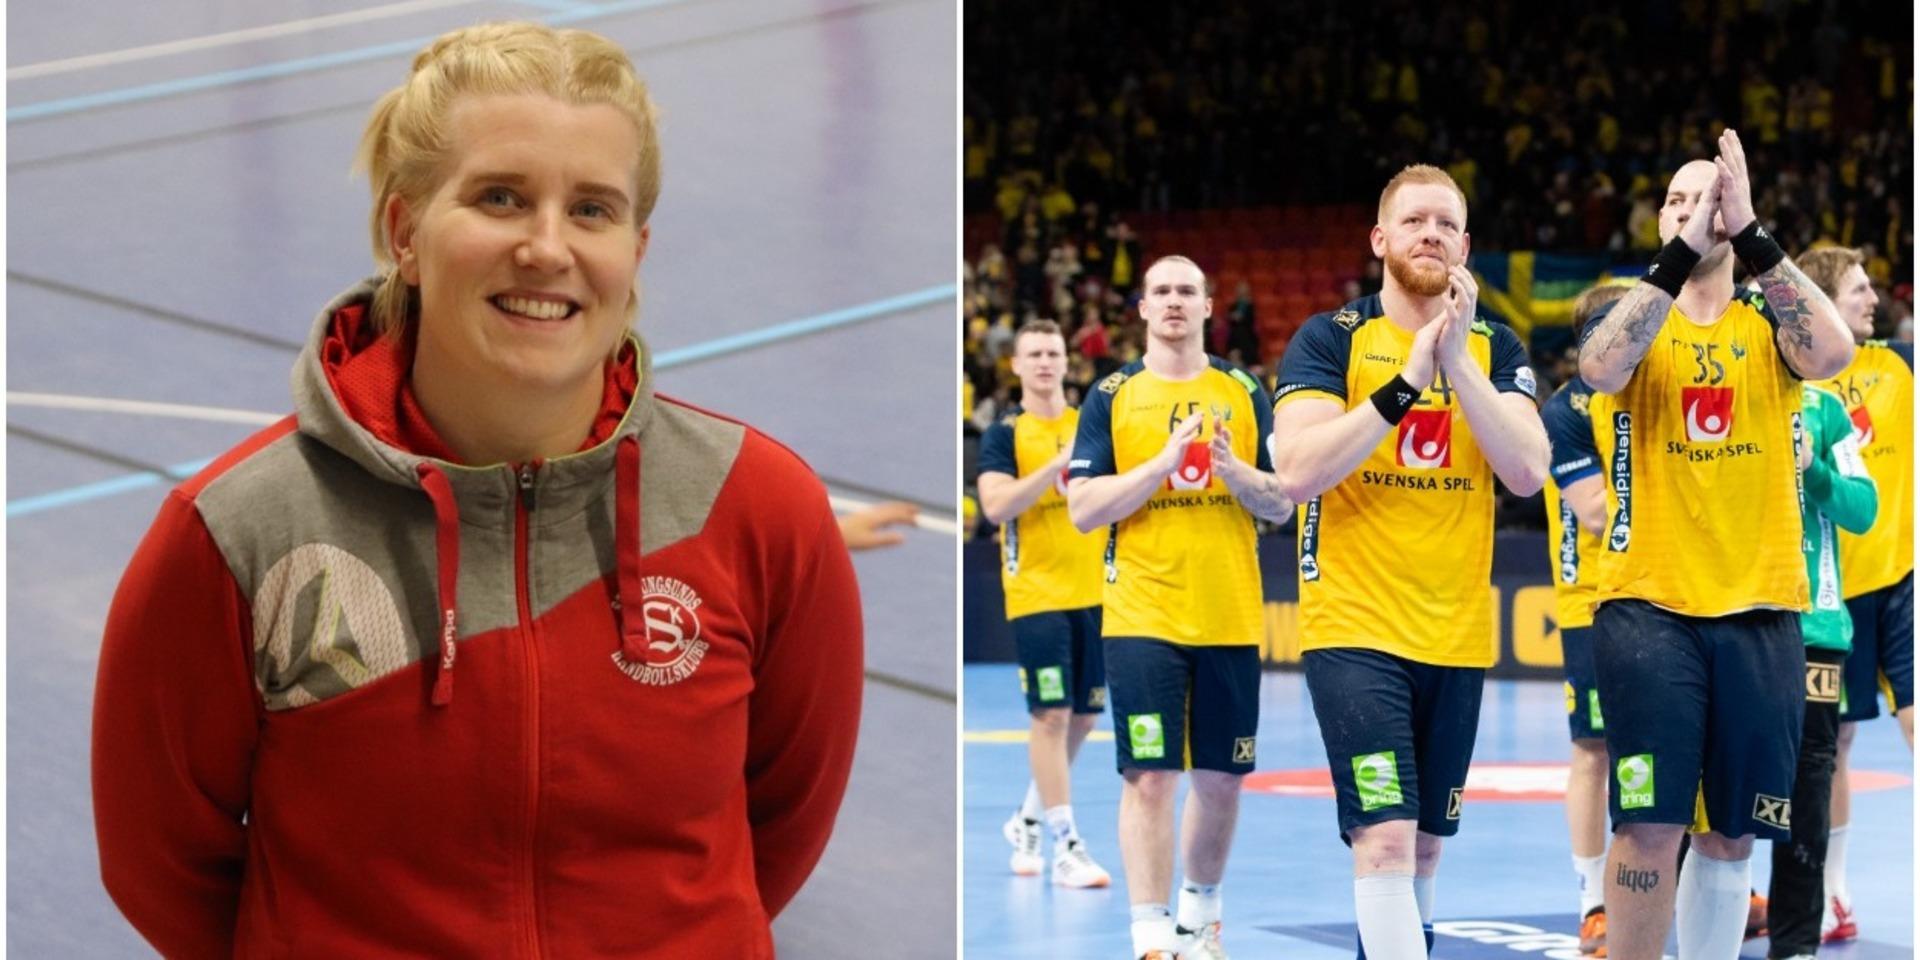 Malin Svensson arbetade tidigare som klubbdirektör i Stenungsunds HK men är numera kanslichef på Handbollförbundet Väst. I uppdraget att bistå kring VM i handboll för herrar som avgörs i januari 2023 med Göteborg som en av spelorterna. Det är ett uppdrag som hon mer än gärna gör.